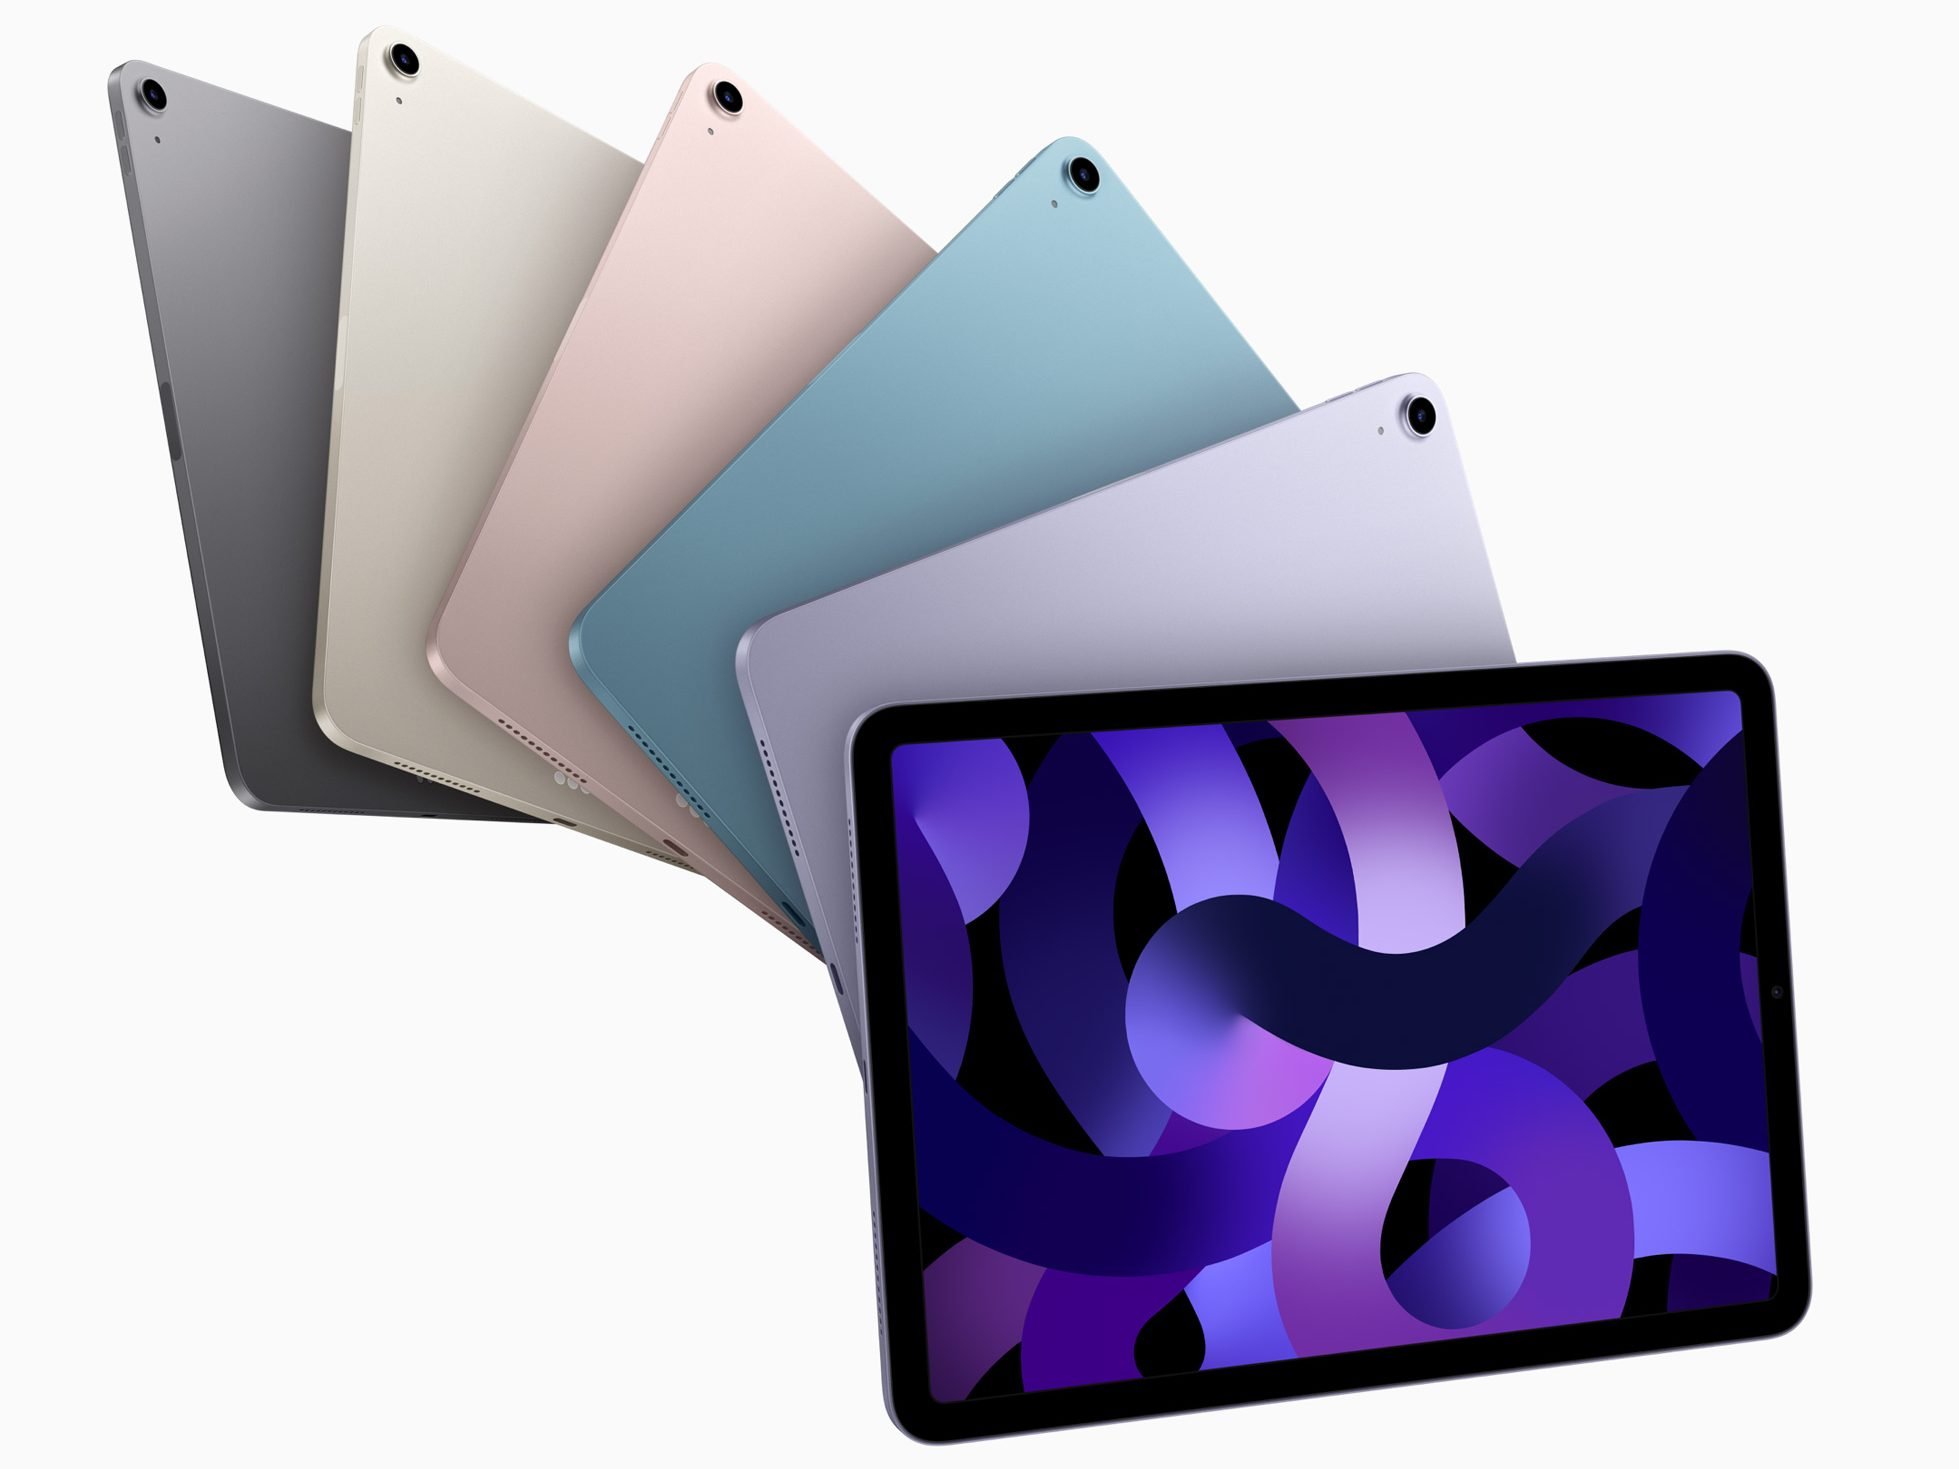 De iPad Air is in 5 kleuren verkrijgbaar, de iPad Pro in slechts 2. Afbeelding: Apple